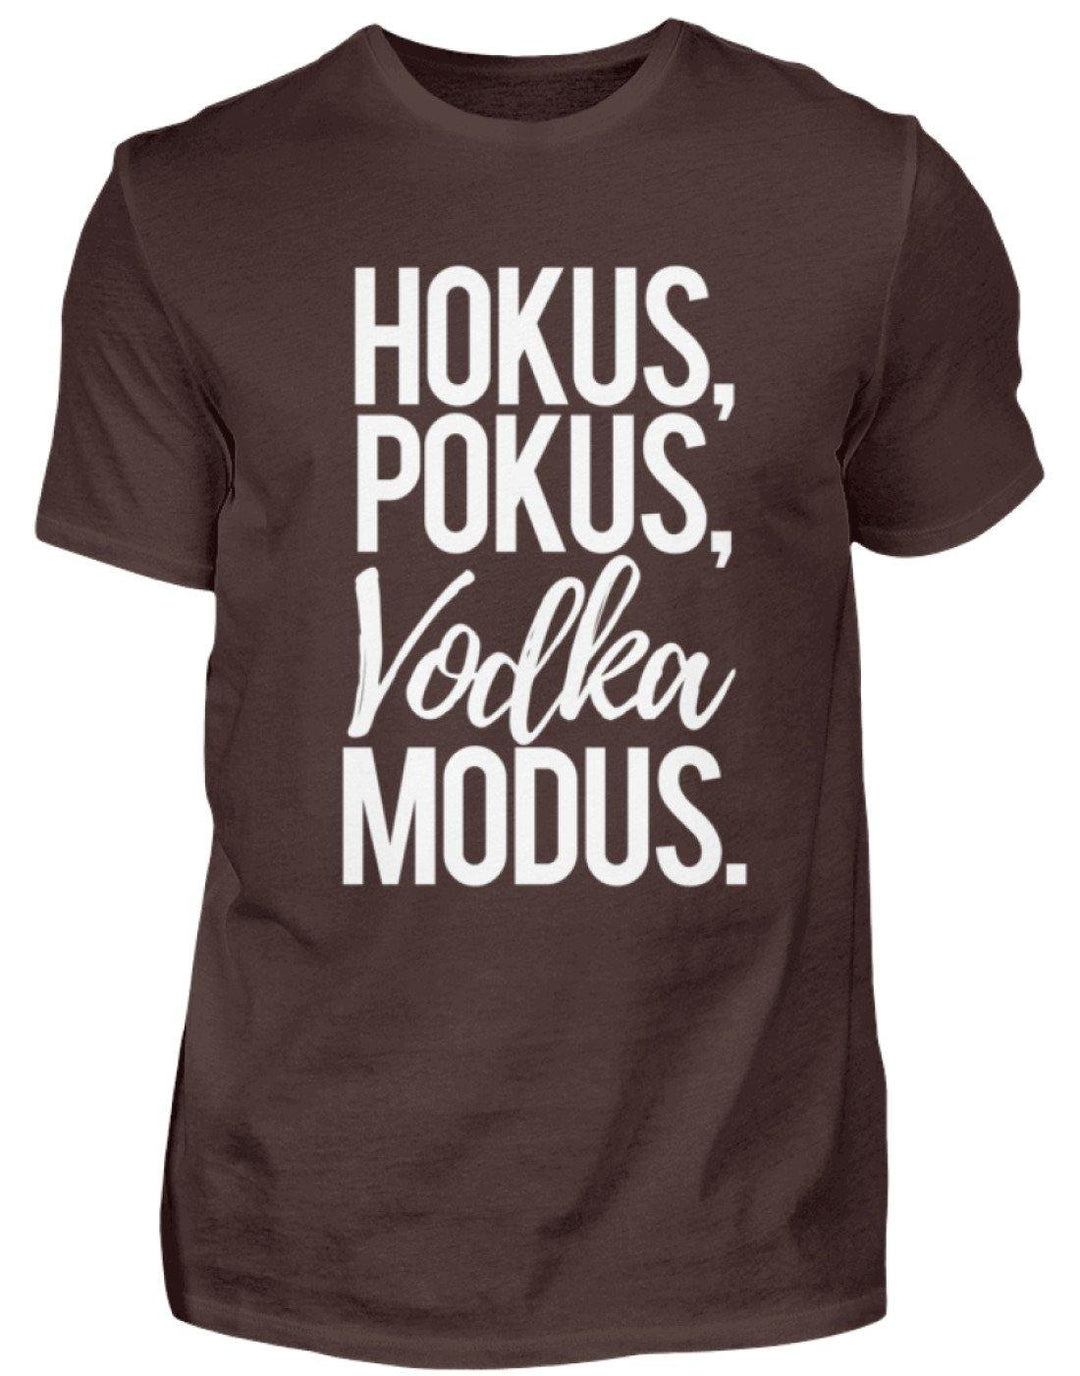 Hokus, Pokus, Vodka Modus  - Standard Shirt Damen/Herren - Words on Shirts Sag es mit dem Mittelfinger Shirts Hoodies Sweatshirt Taschen Gymsack Spruch Sprüche Statement